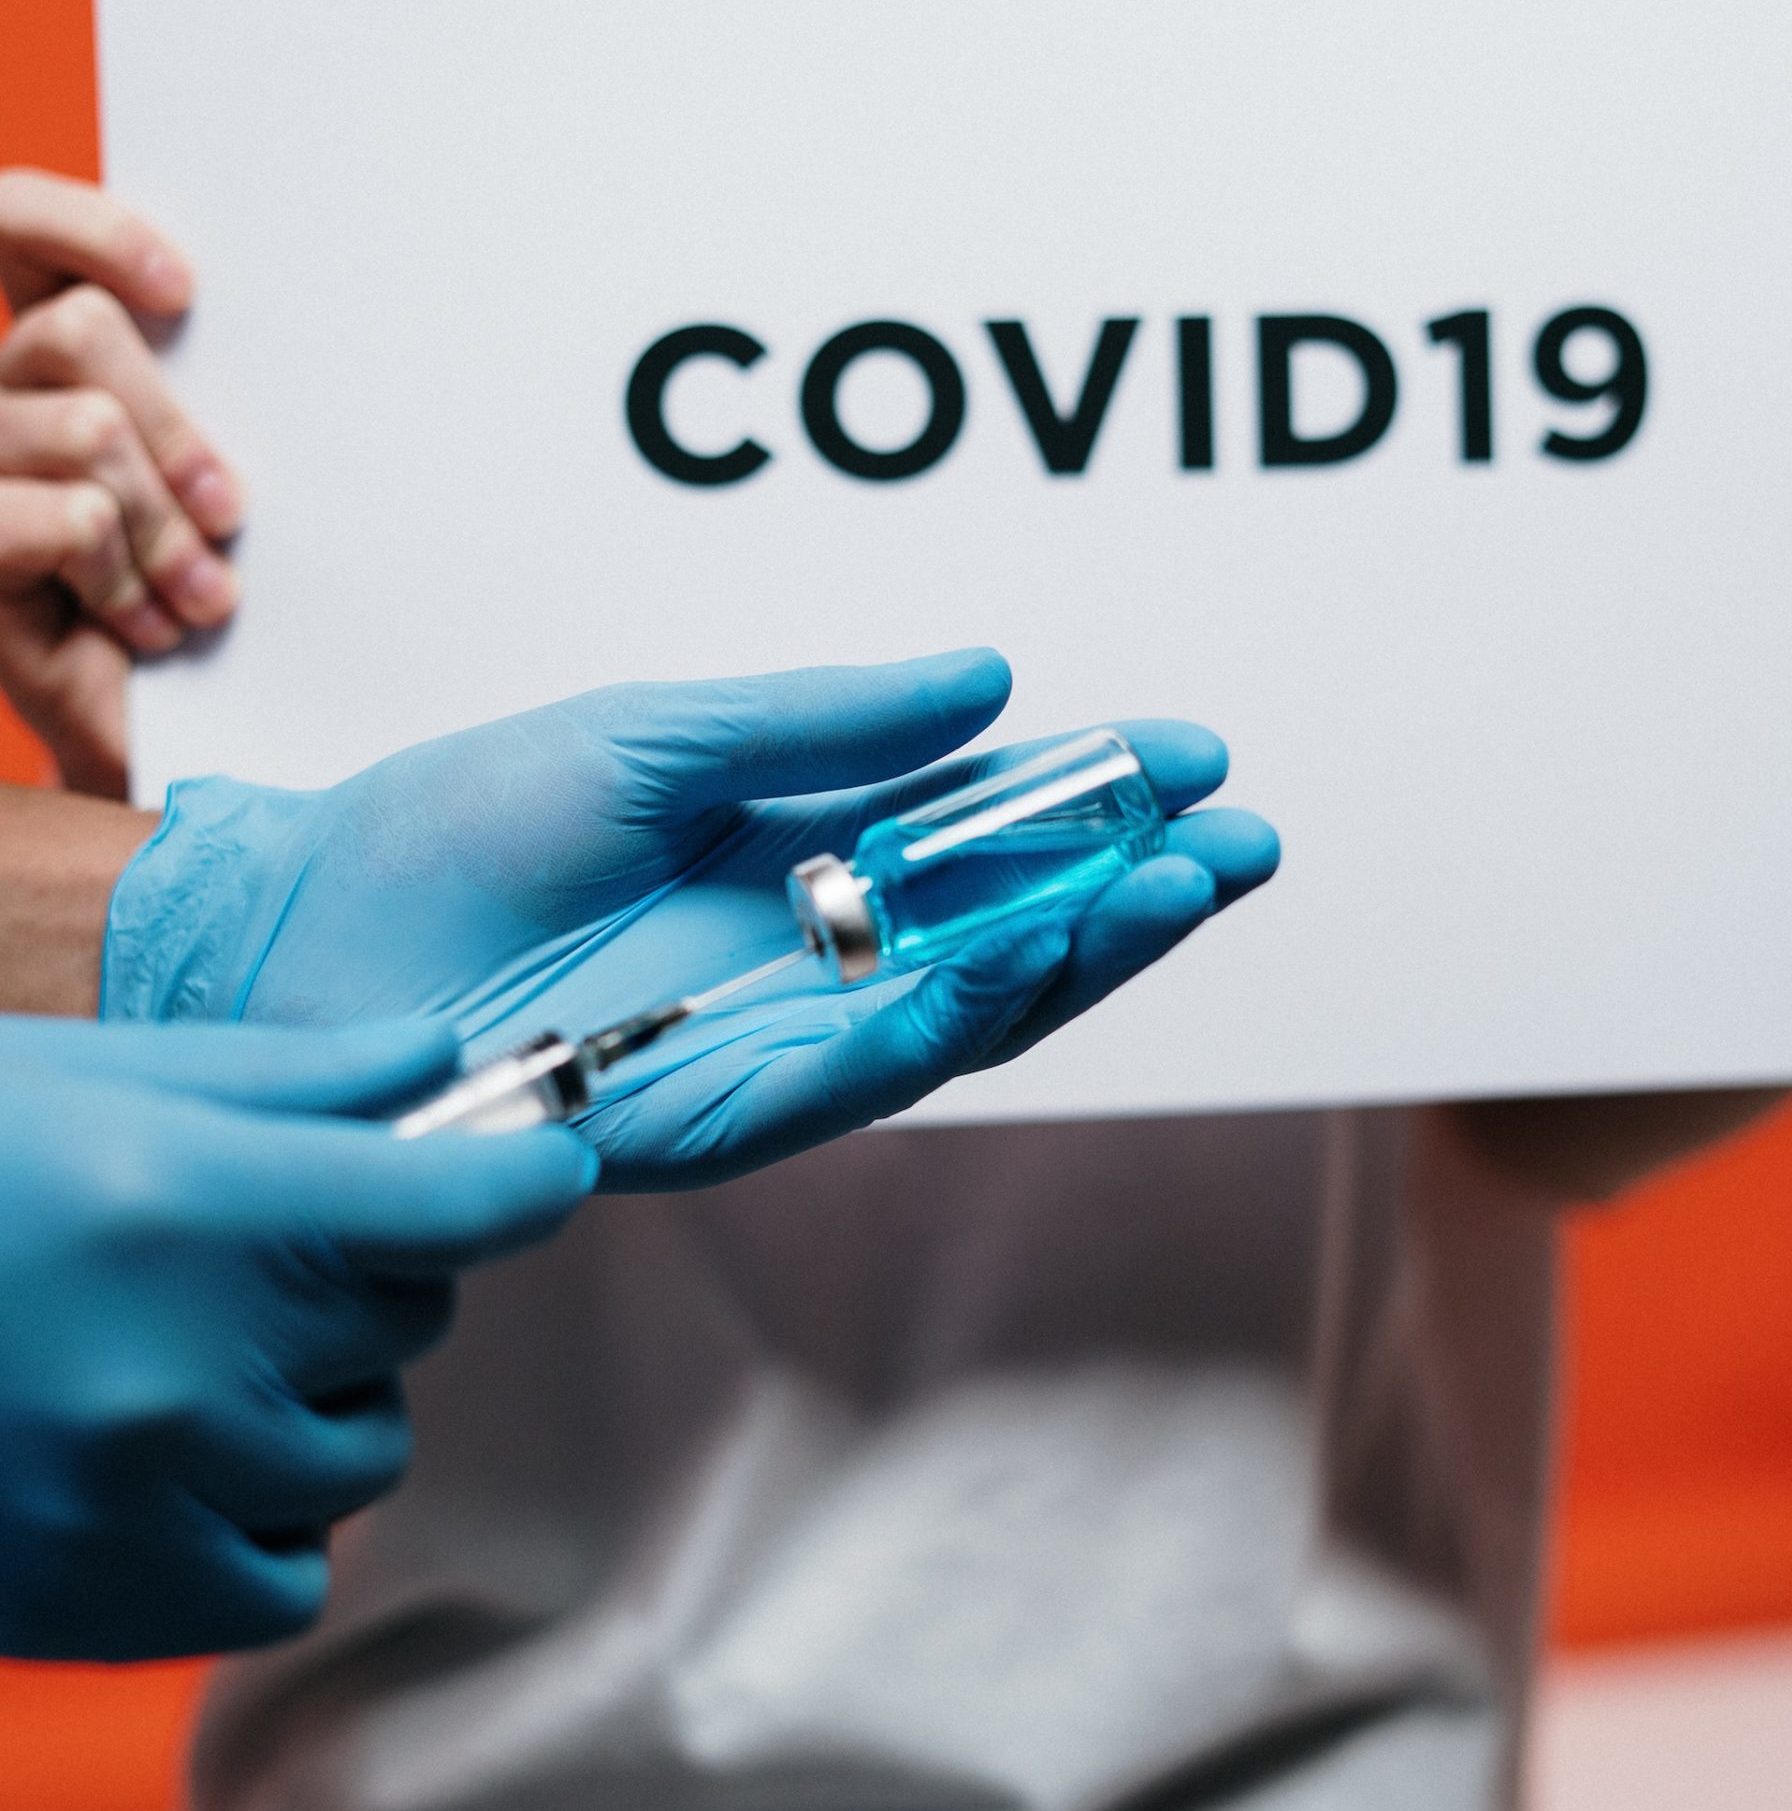 El instituto Sheba Pandemic Research está desarrollaando una nueva vacuna contra el COVID-19. Foto: cottonbro studio/Pexels.